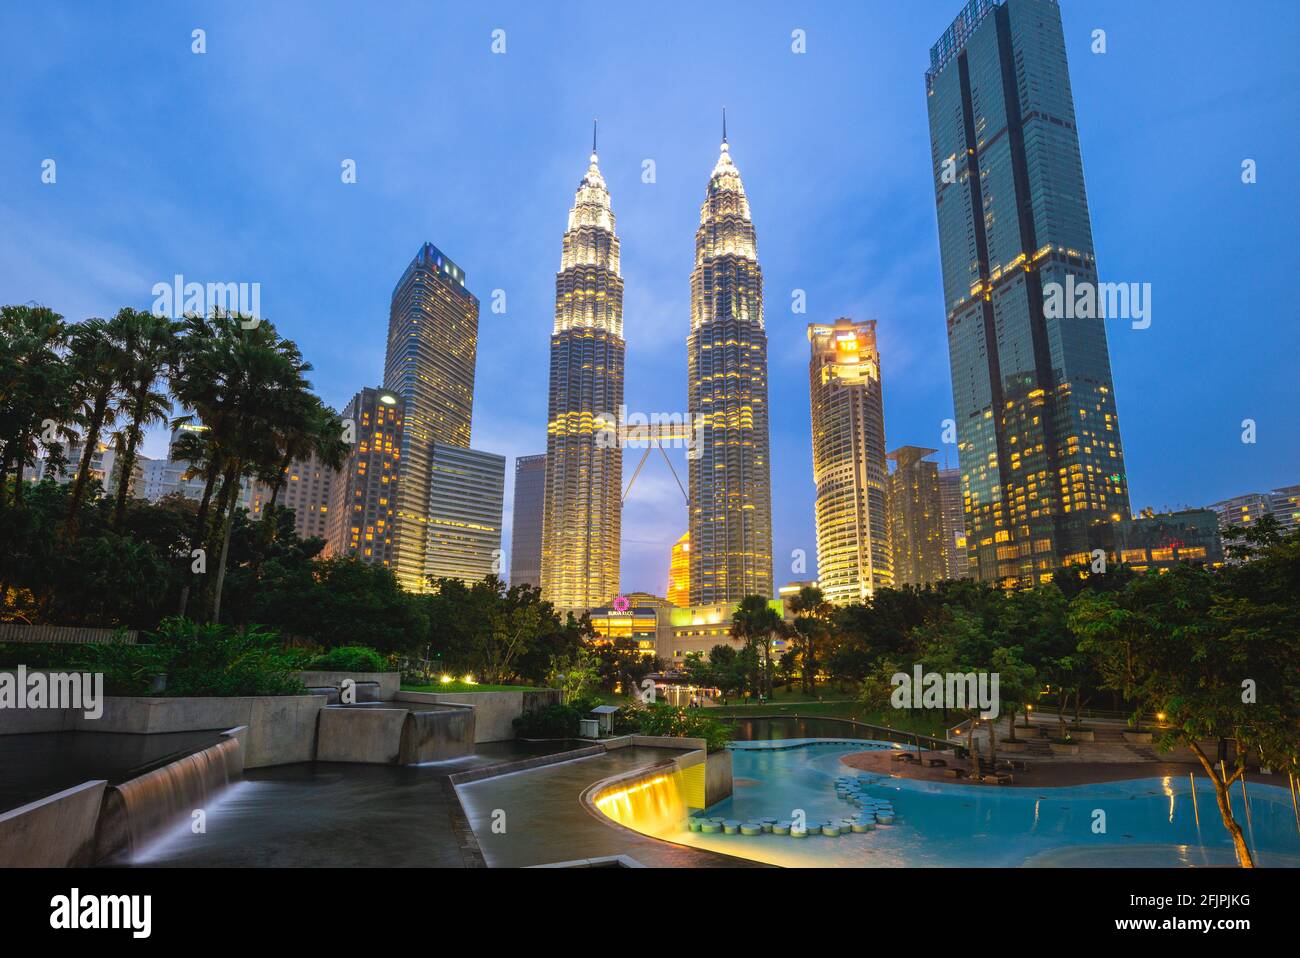 20 agosto 2018: torri gemelle petronas, gli edifici più alti di Kuala Lumpur, malesia e le torri gemelle più alte del mondo Foto Stock